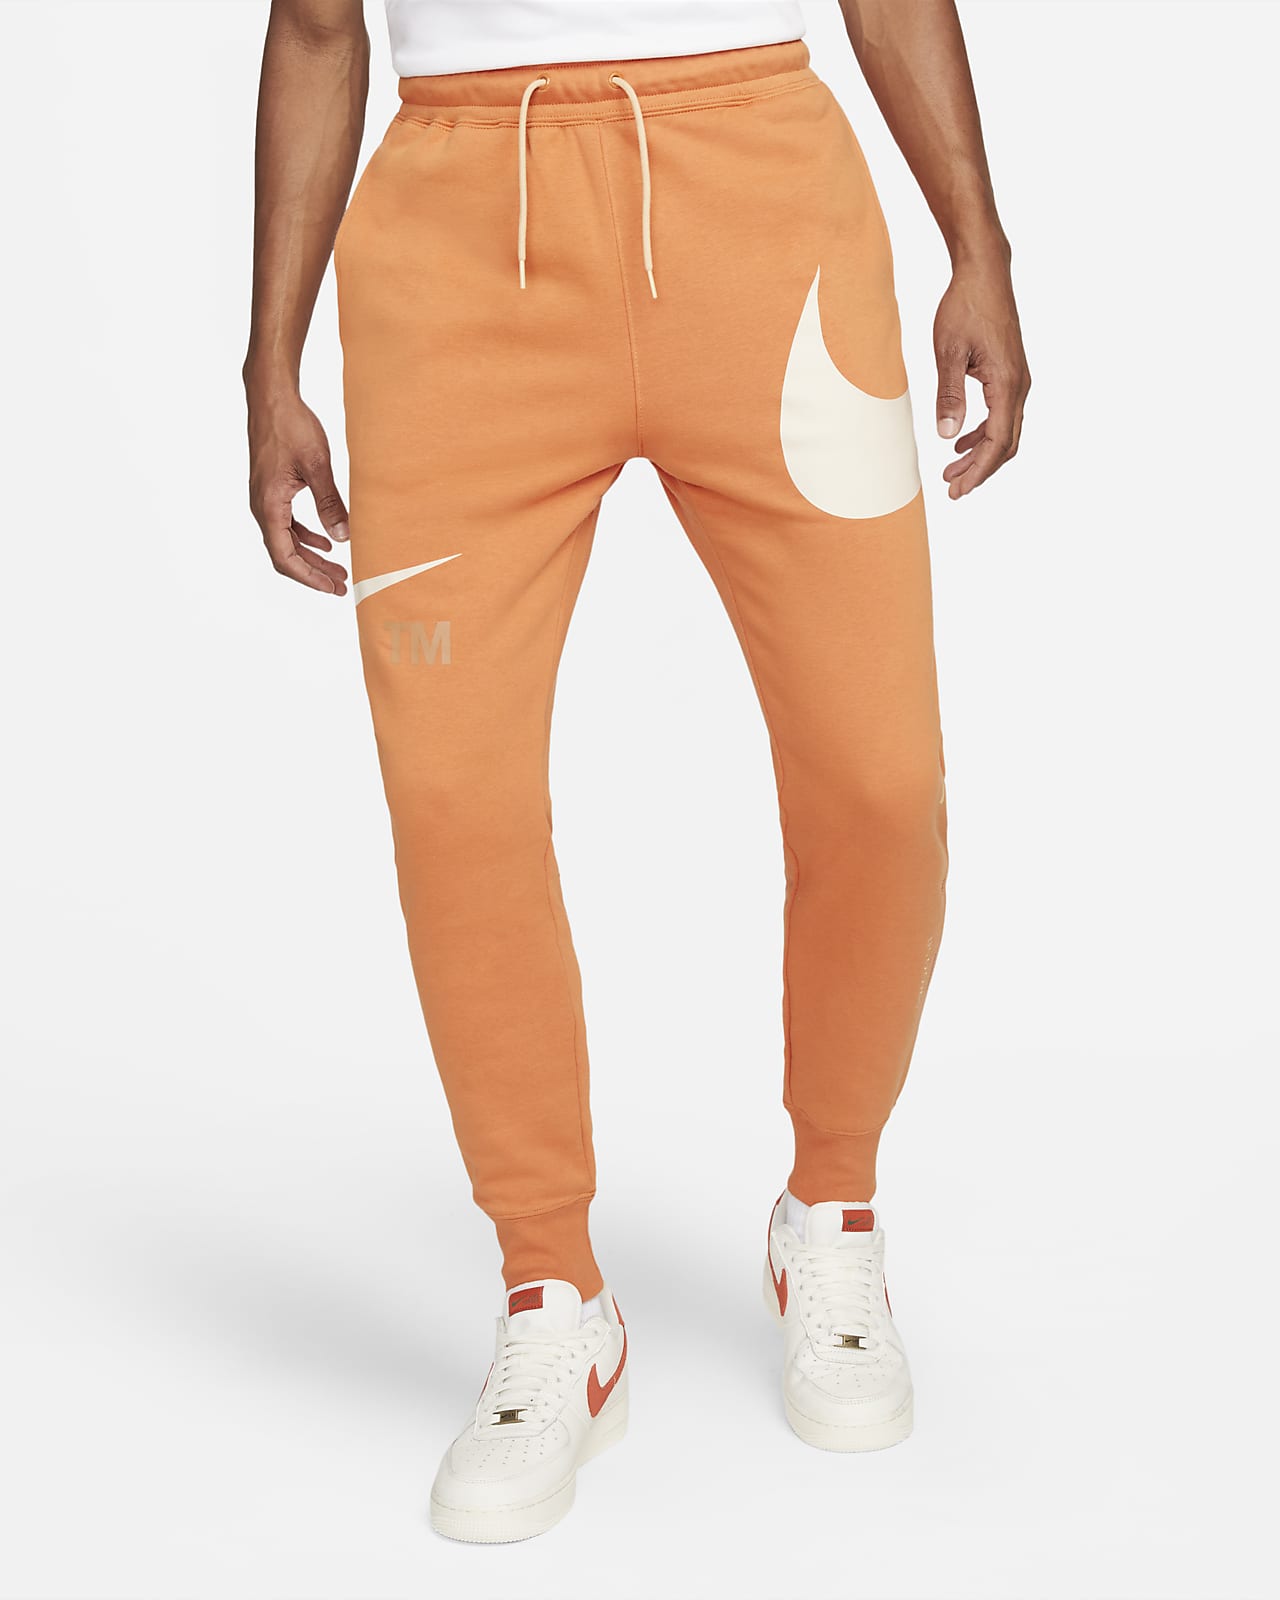 Męskie spodnie z materiału częściowo szczotkowanego od spodu Nike Sportswear Swoosh